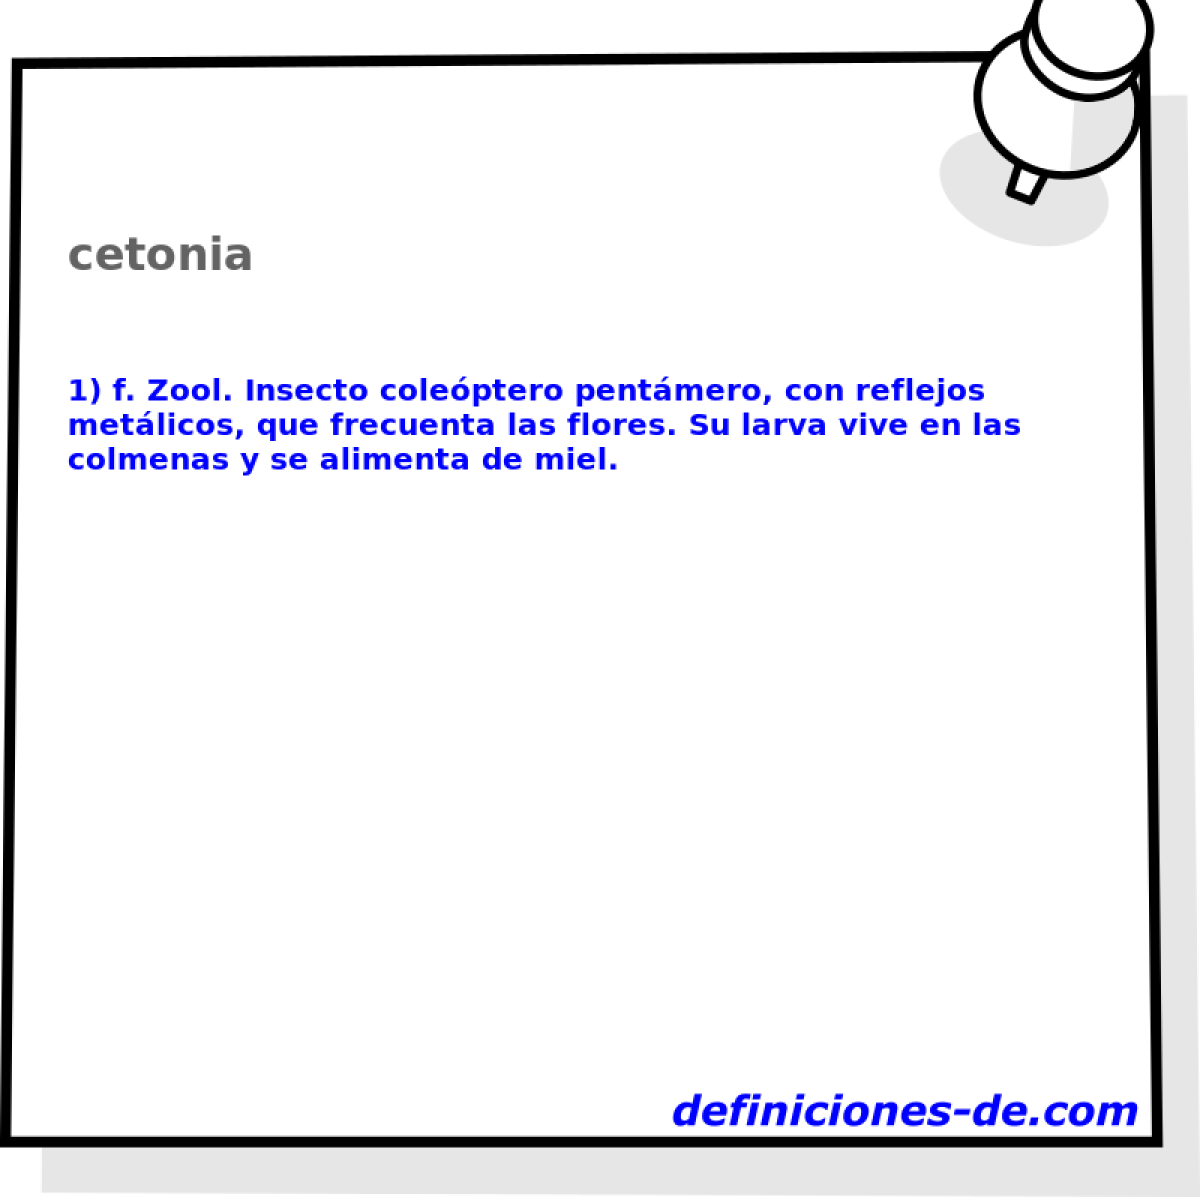 cetonia 